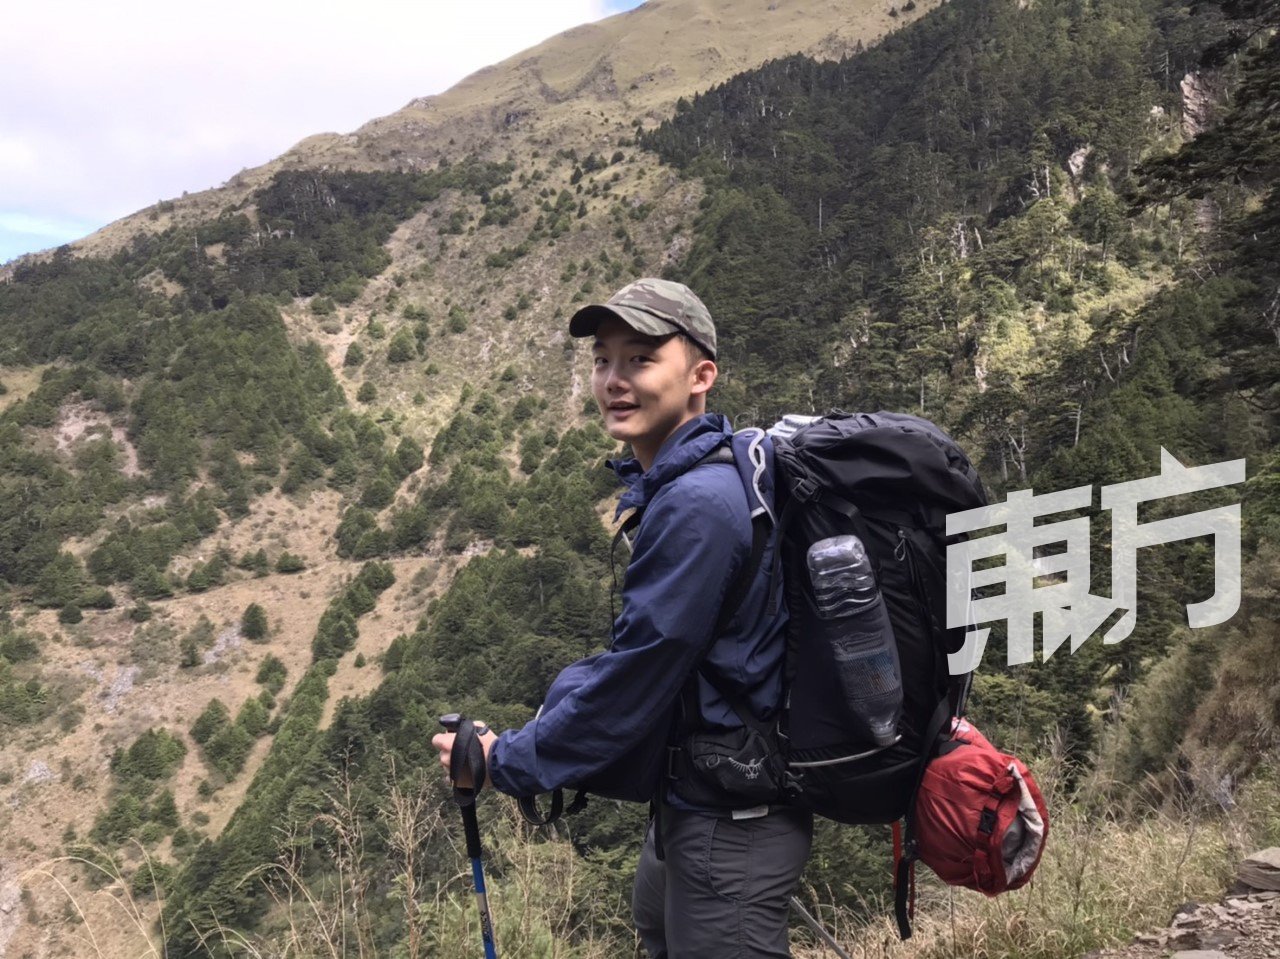 翟晟喜欢登山，去年虽然受疫情影响，但仍完成了6.1的目标——登山3趟，多往山上走走。去年登了6次山，还到宜兰露营，第一次住露营车和骑沙滩车。